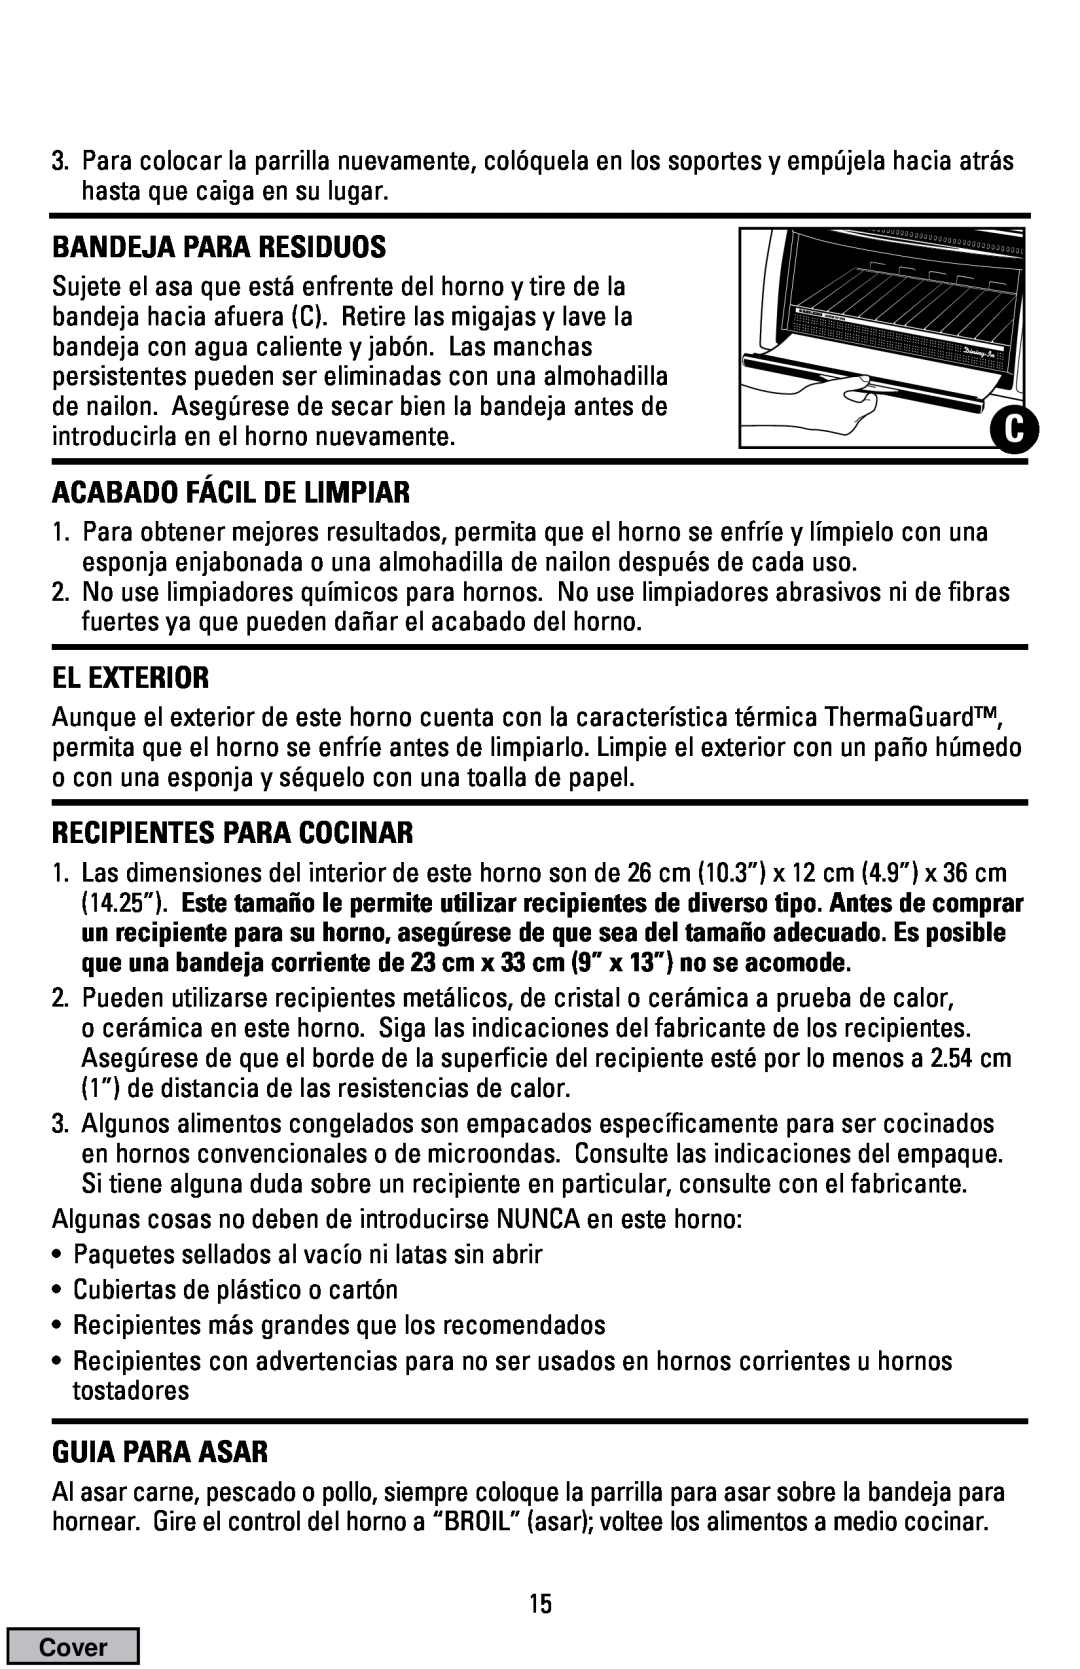 Black & Decker CTO9000 manual Bandeja Para Residuos, Acabado Fácil De Limpiar, El Exterior, Recipientes Para Cocinar 